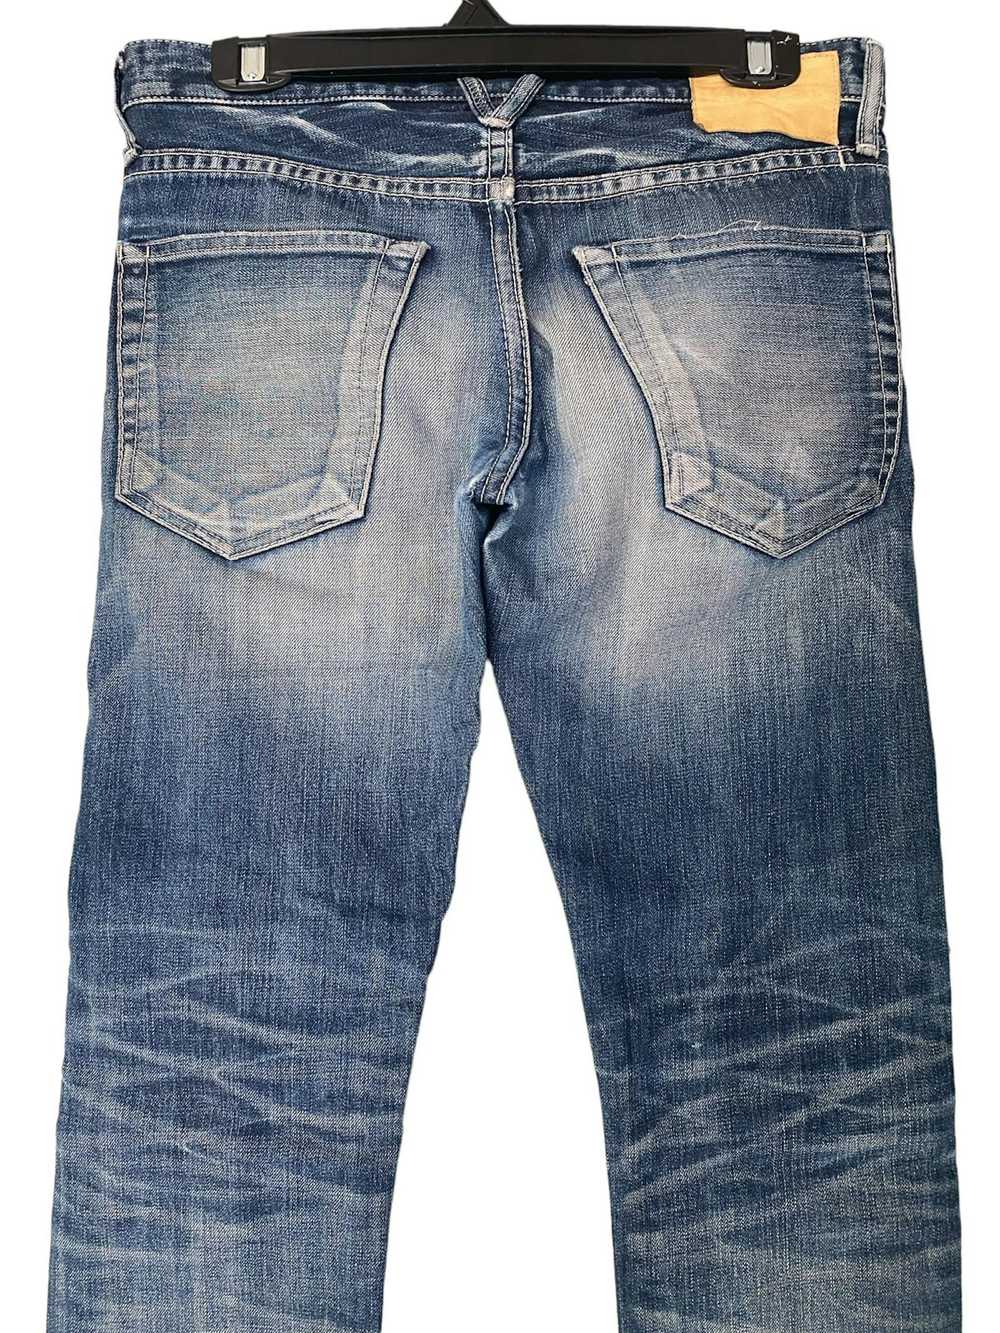 Vanquish Vanquish Distressed Jeans - image 5